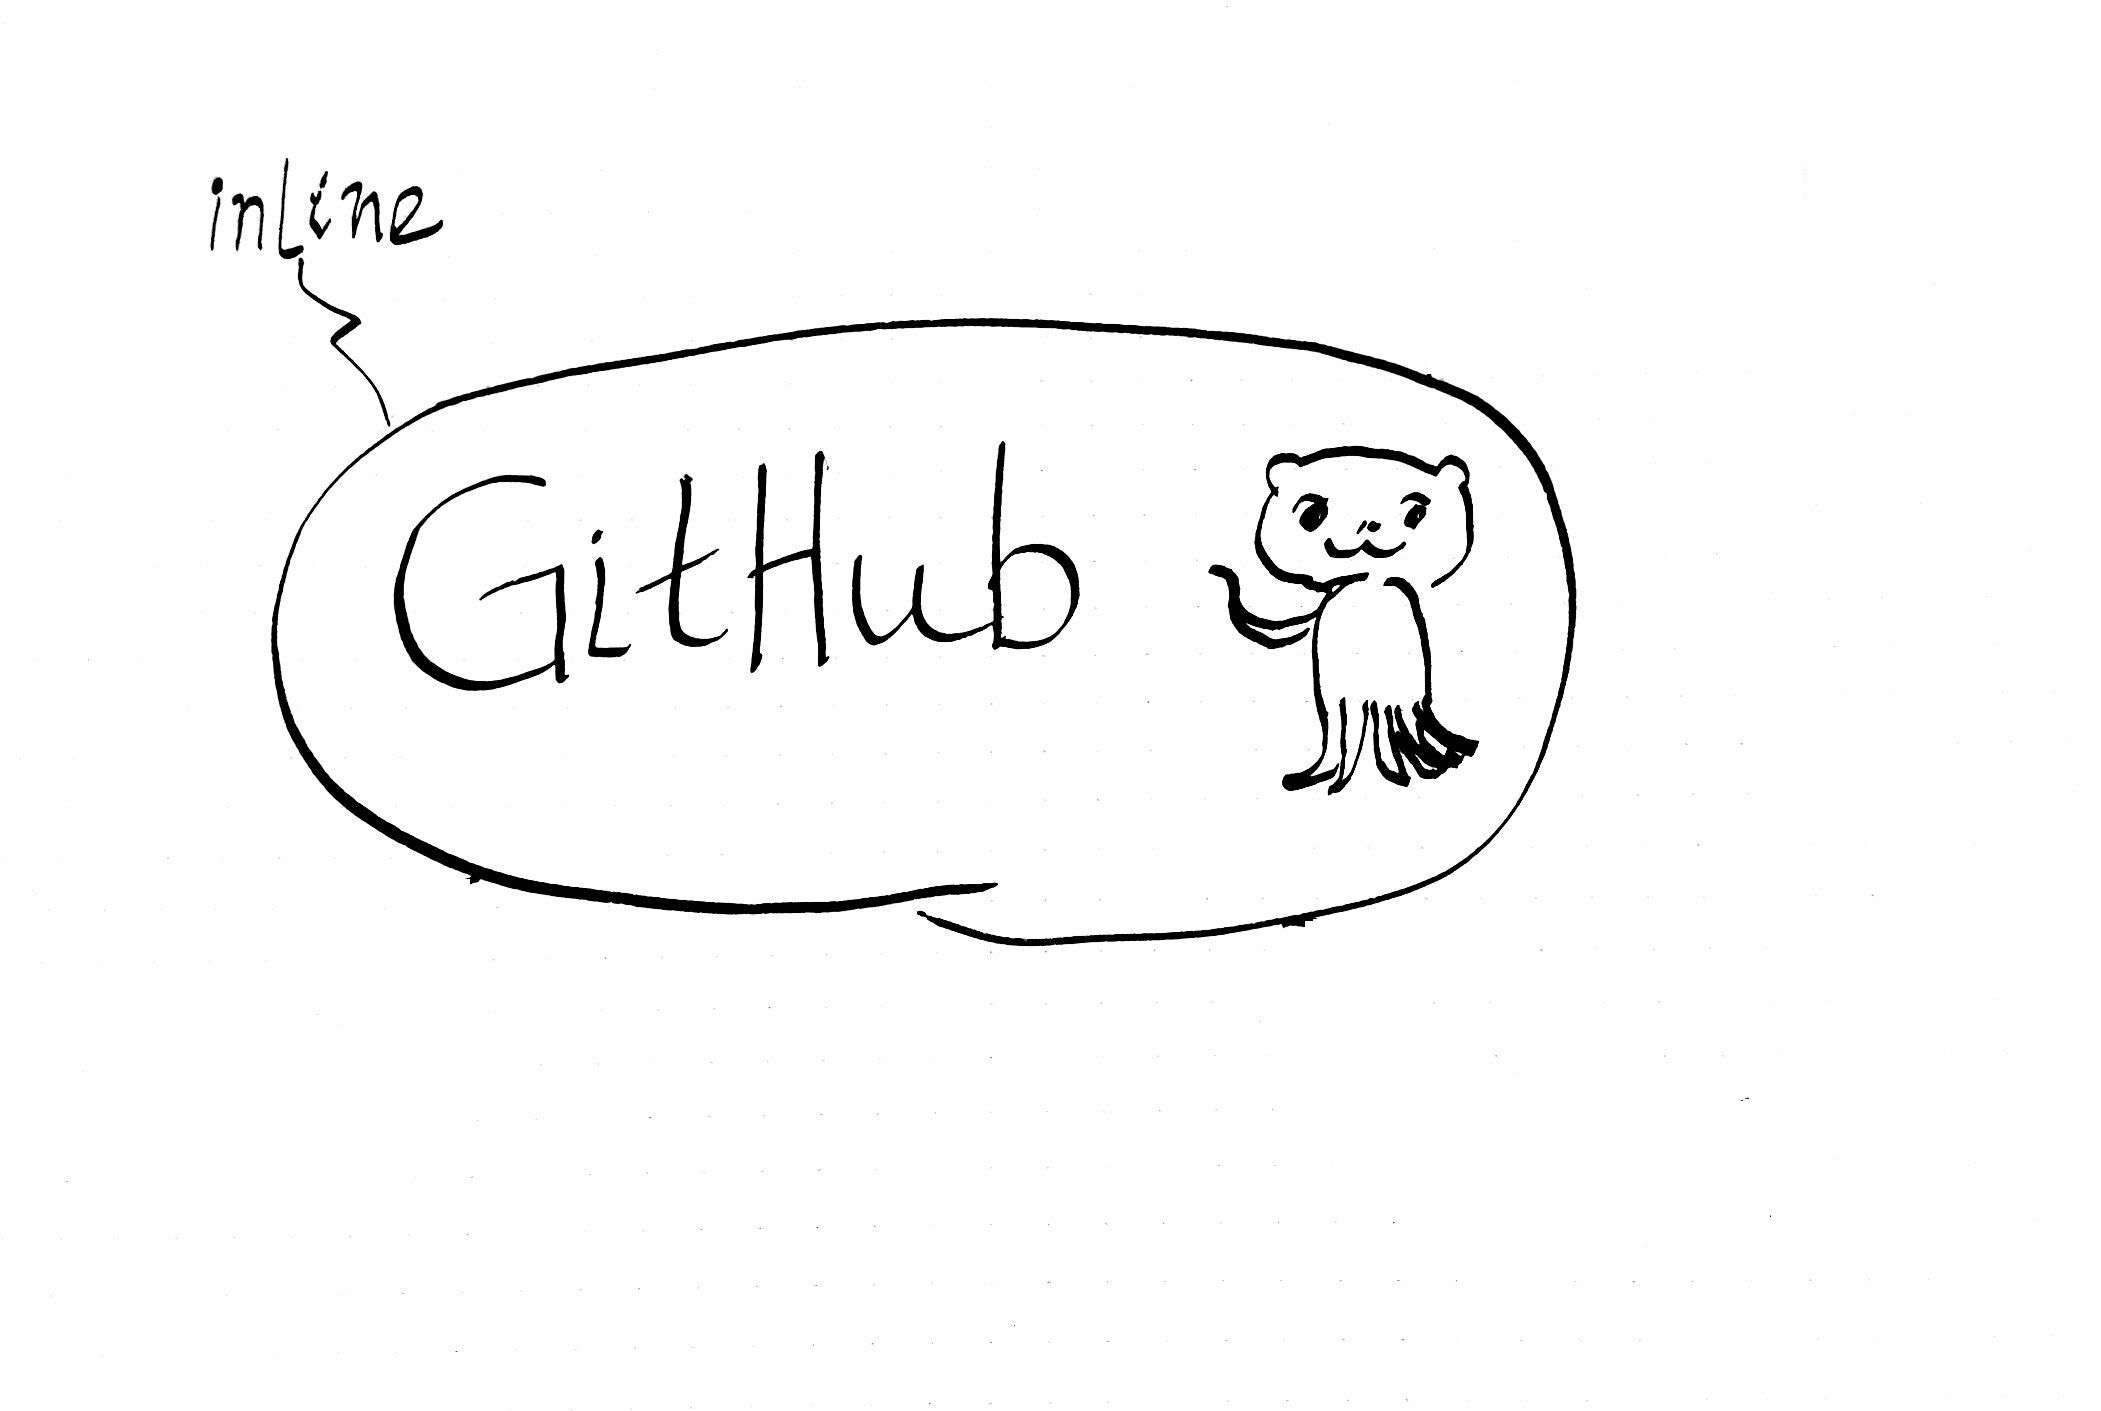 04-21-github-inline.md